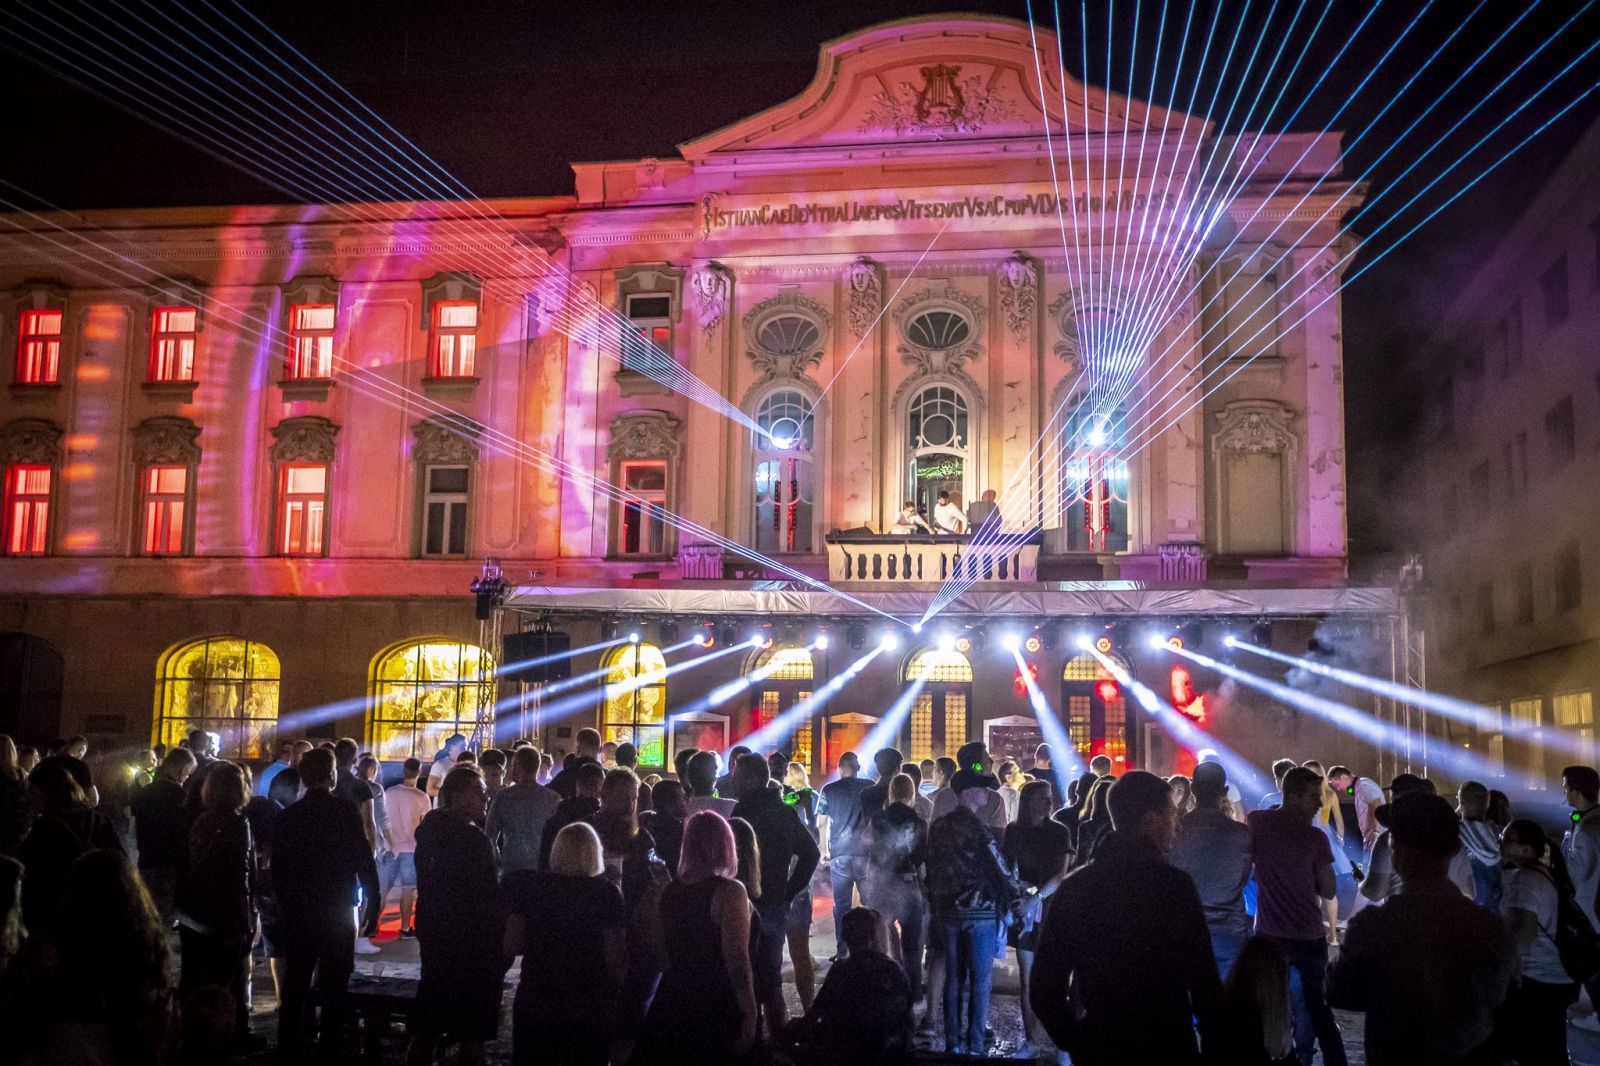 Trnavu ovládne párty priamo na námestí plná laserov a akrobacie. Festival Lovely Experience ti dá zážitok na celý život